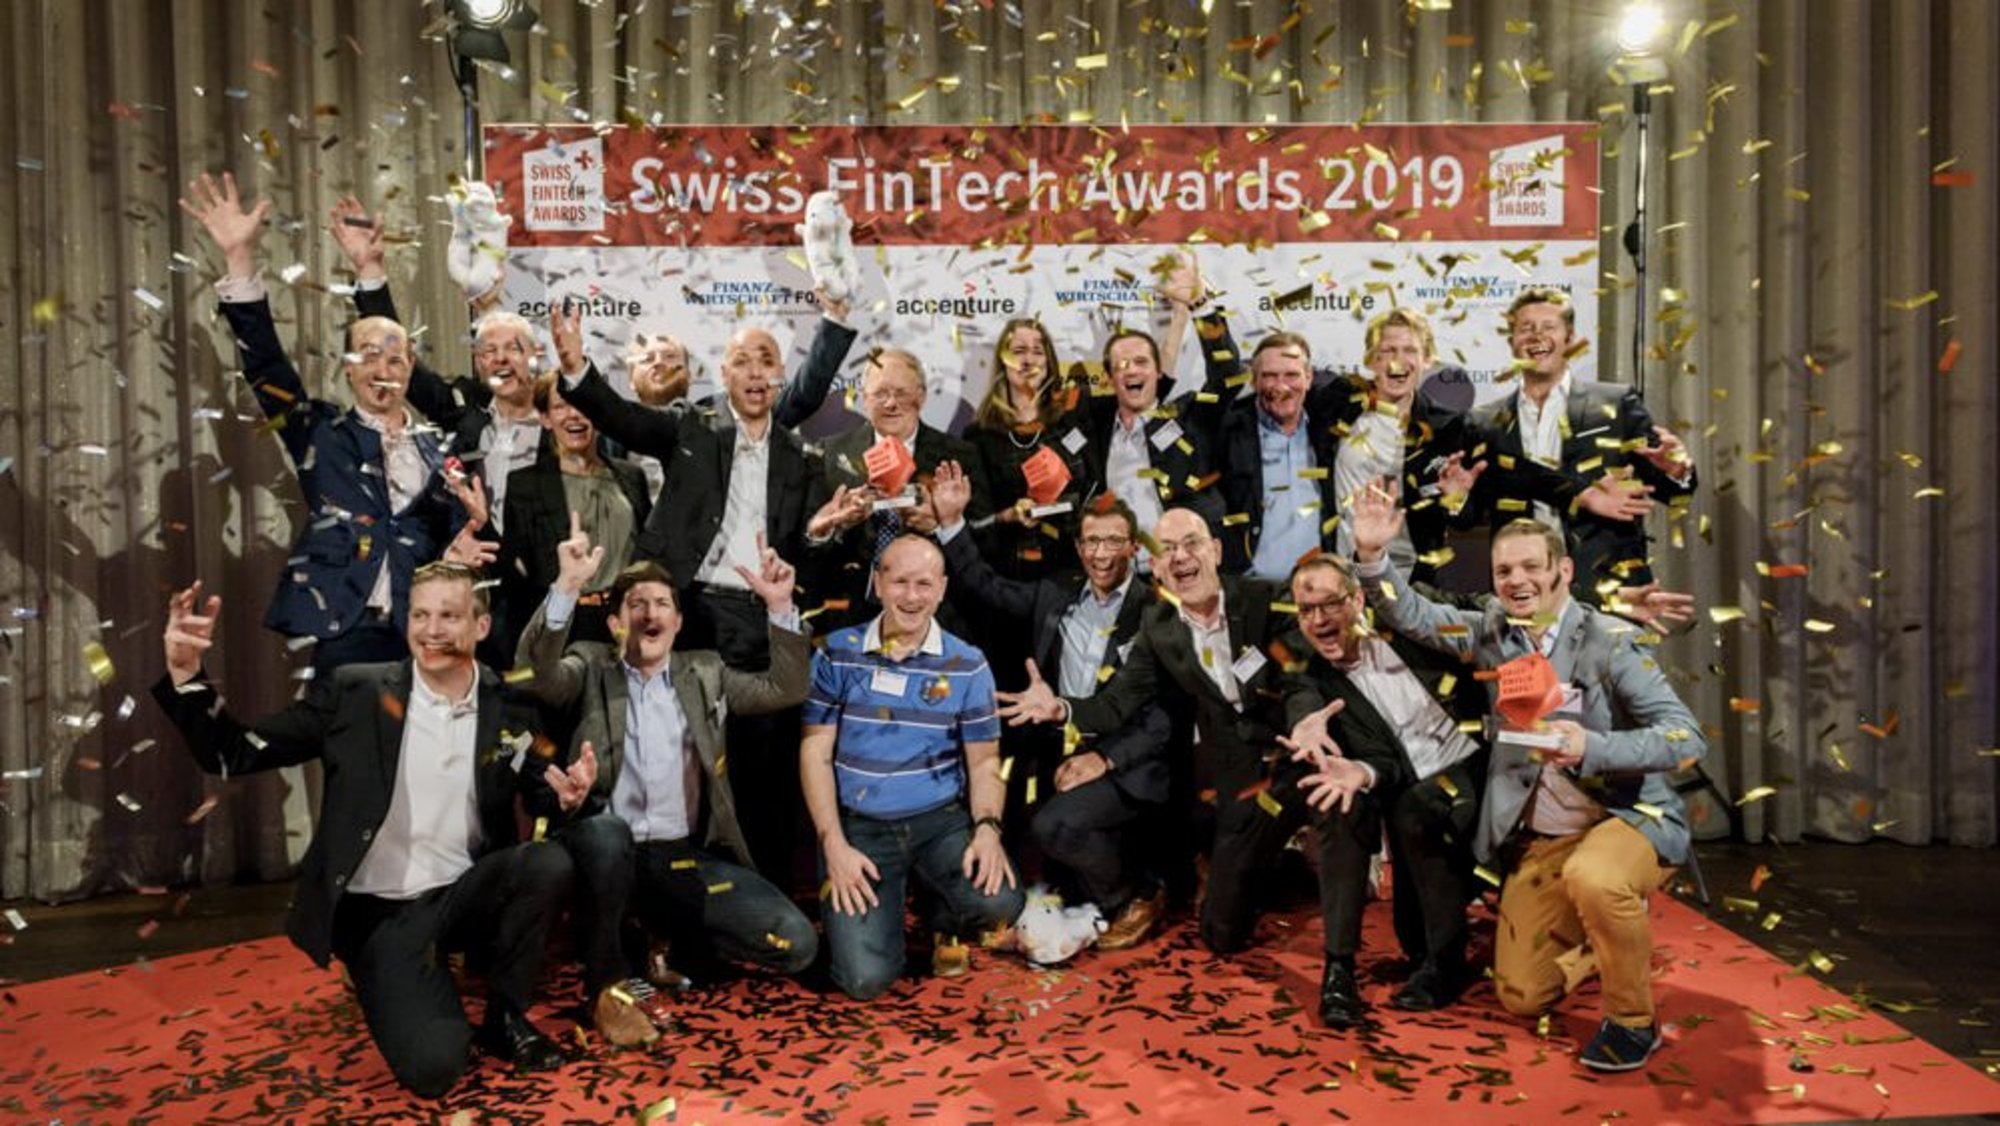 Swiss FinTech Awards 2019